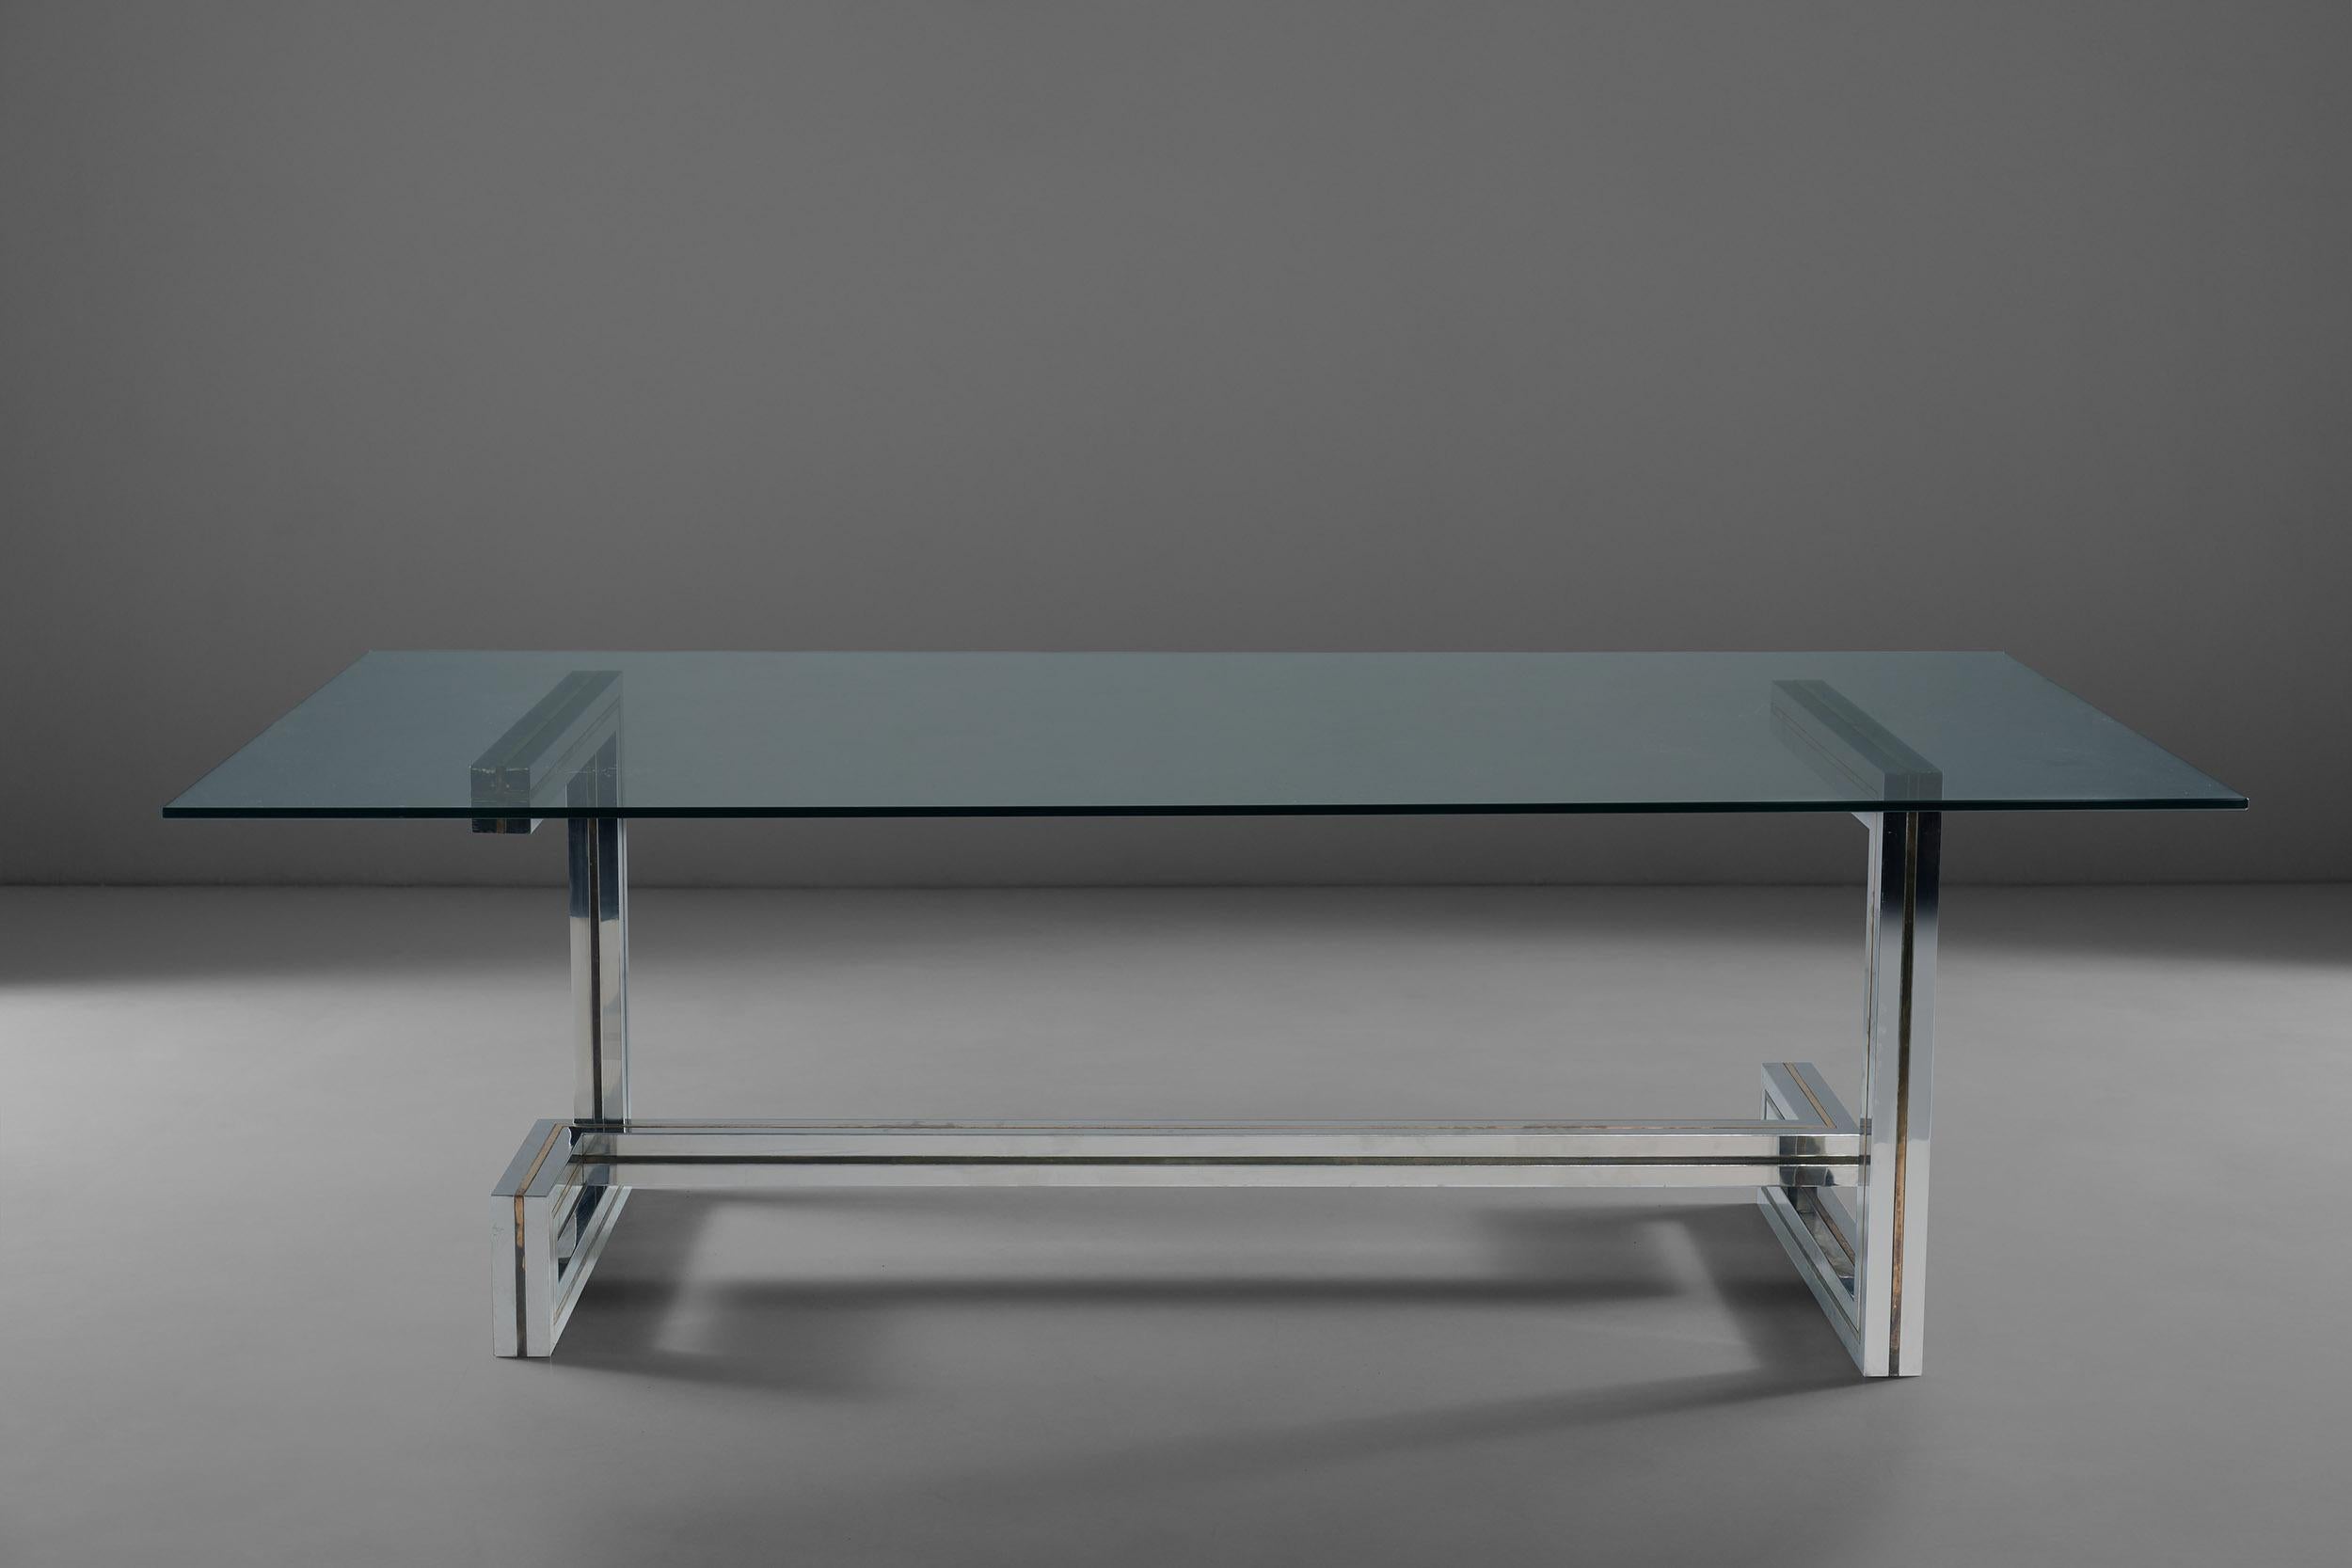 Ein erstaunlicher Esstisch von Romeo Rega aus Stahl, Messing und einer Glasplatte. Die Struktur dieses Tisches spielt mit geometrischen Linien und schafft ein klares, aber originelles Gestell aus Stahl und mit Messingeinsätzen. Diese